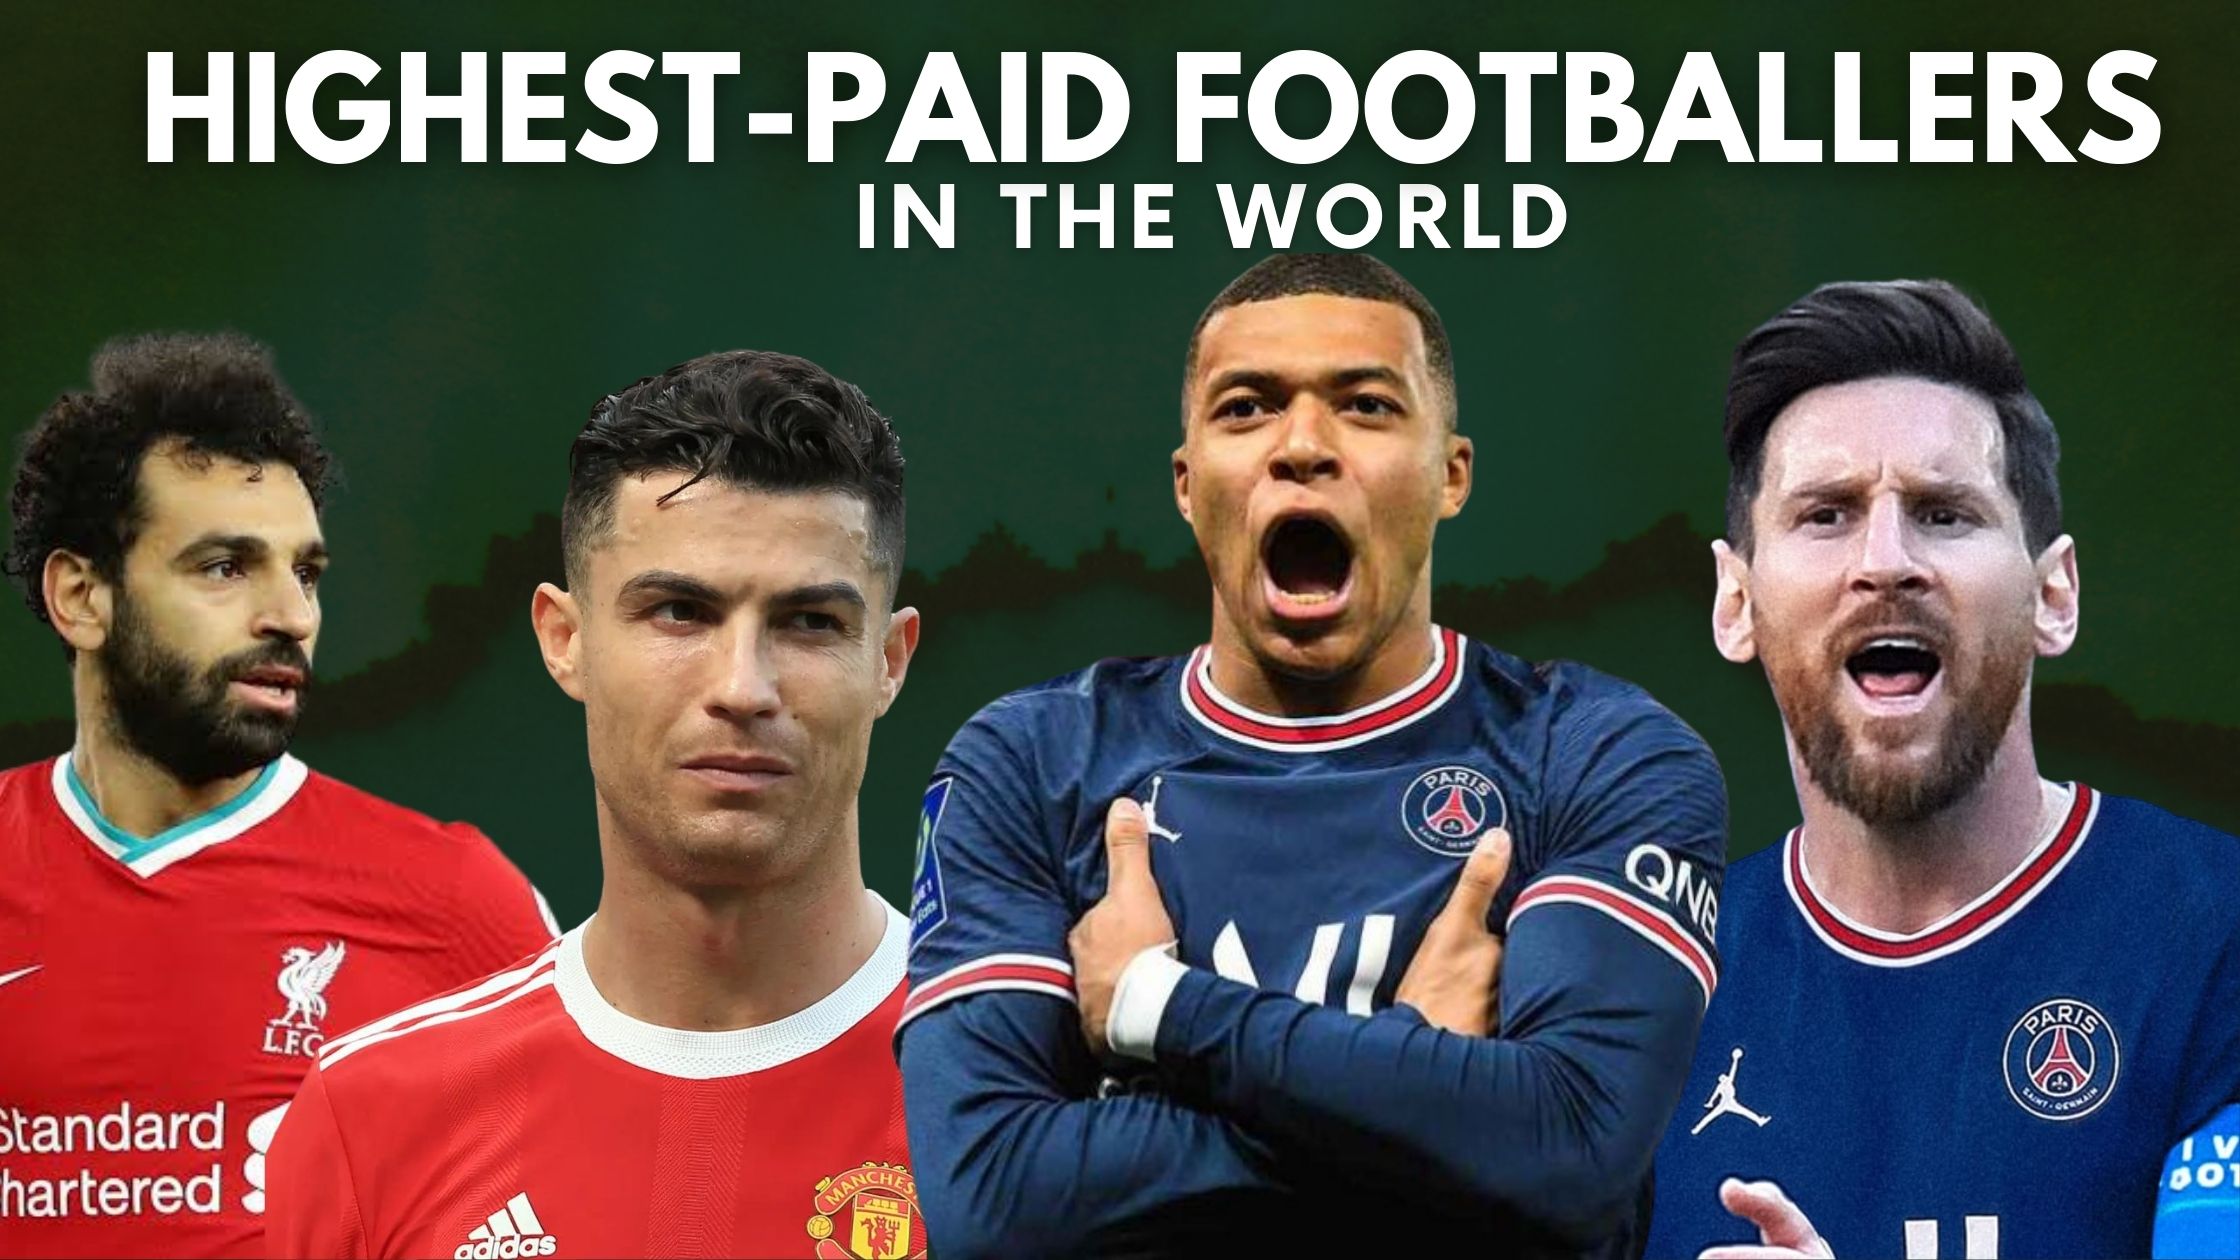 Highest-Paid Footballers